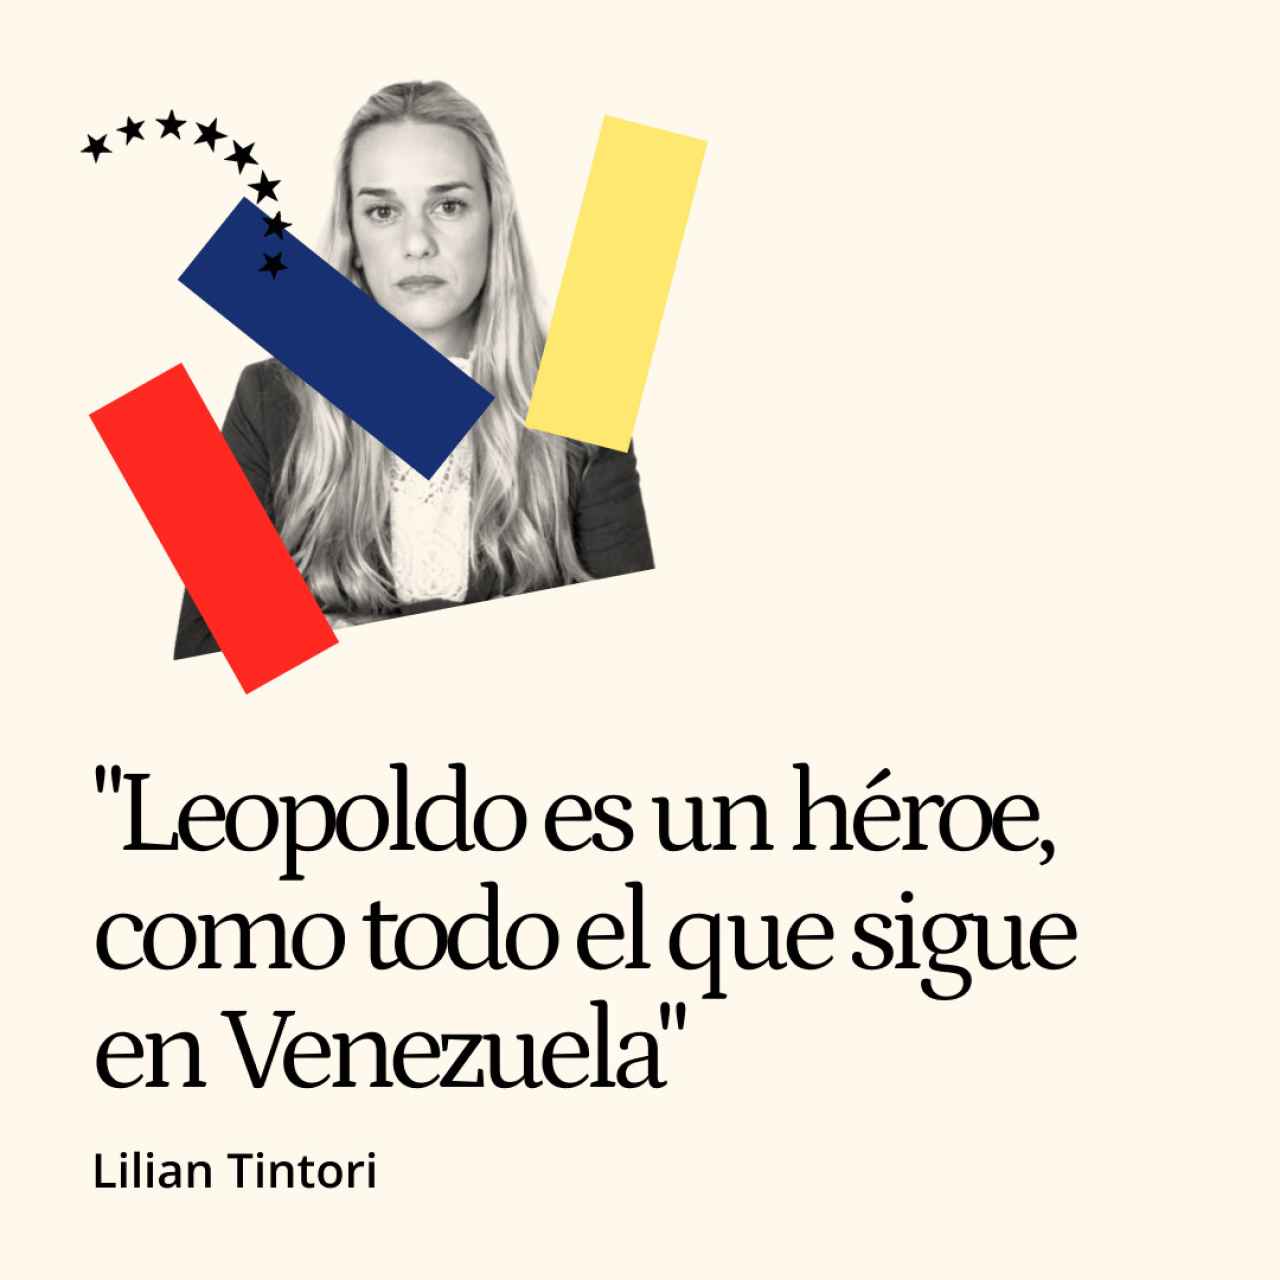 Lilian Tintori, de ama de casa a activista: "Leopoldo es un héroe, como todo el que sigue en Venezuela"